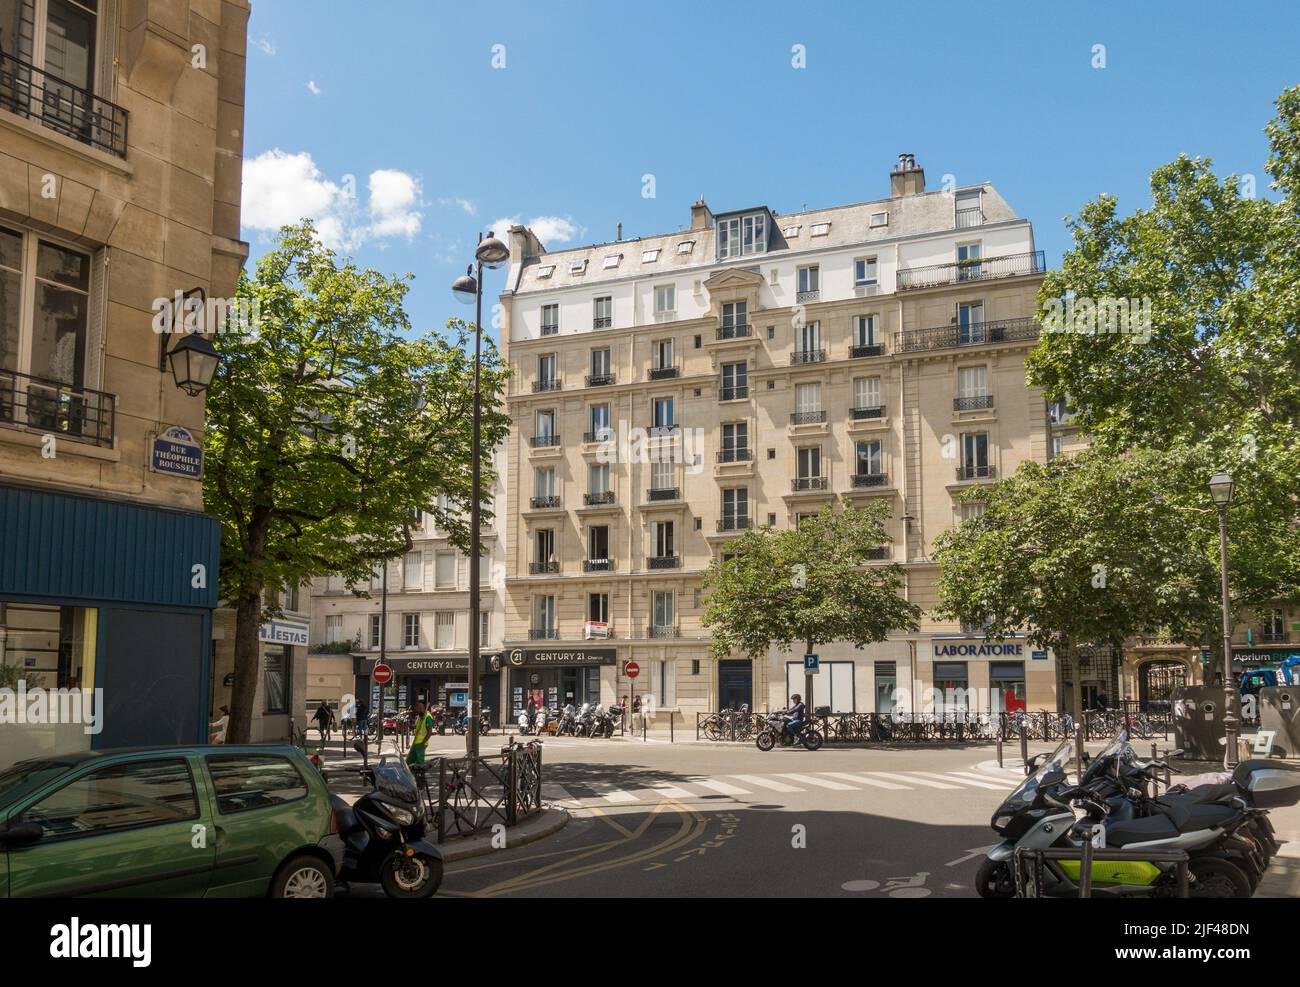 Vieux bâtiments parisiens, architecture haussmannienne, Paris France. Banque D'Images